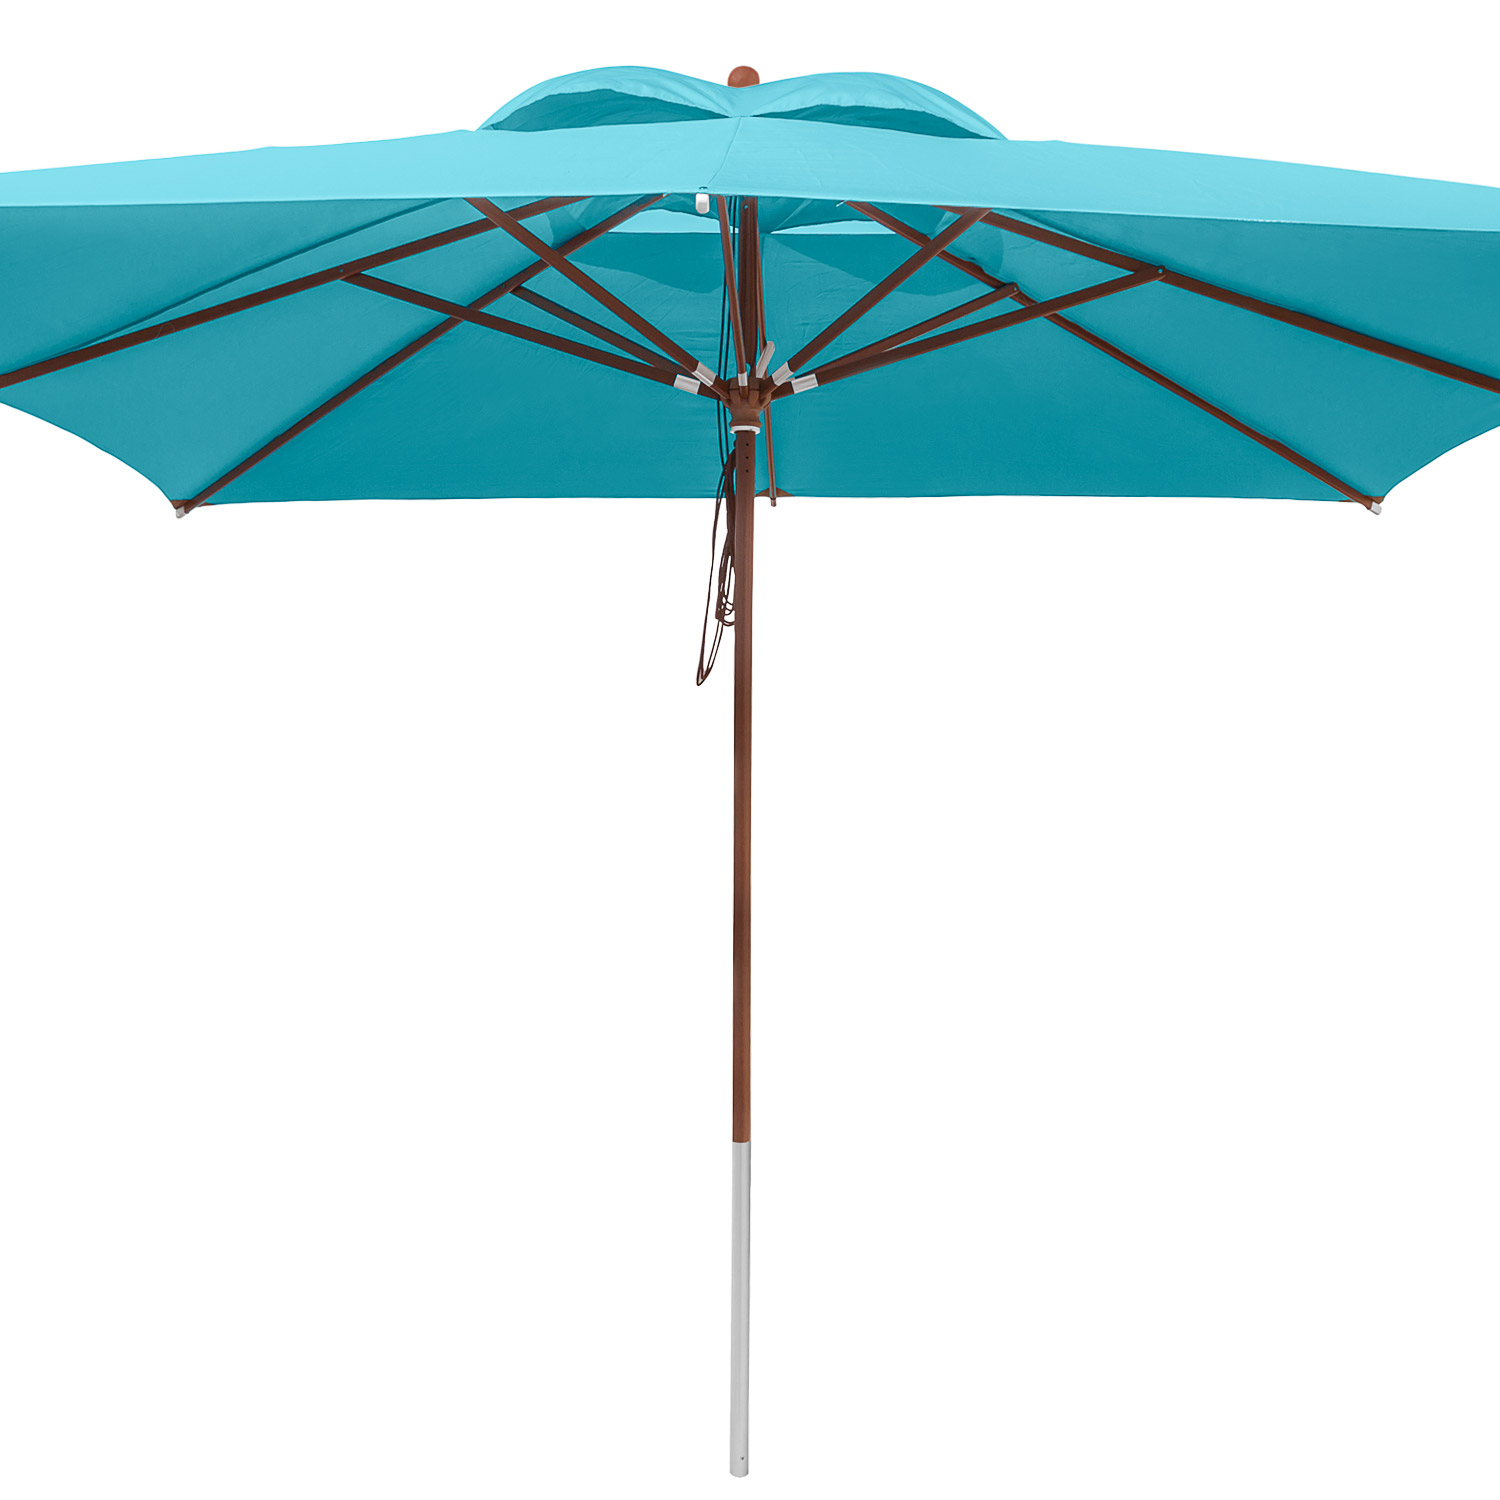 anndora Sonnenschirm mit Holz 4x4m eckig grün Himmelblau- Winddach - UV-Schutz - Quadratischer Marktschirm mit Holz - Stoff waschbar - 1